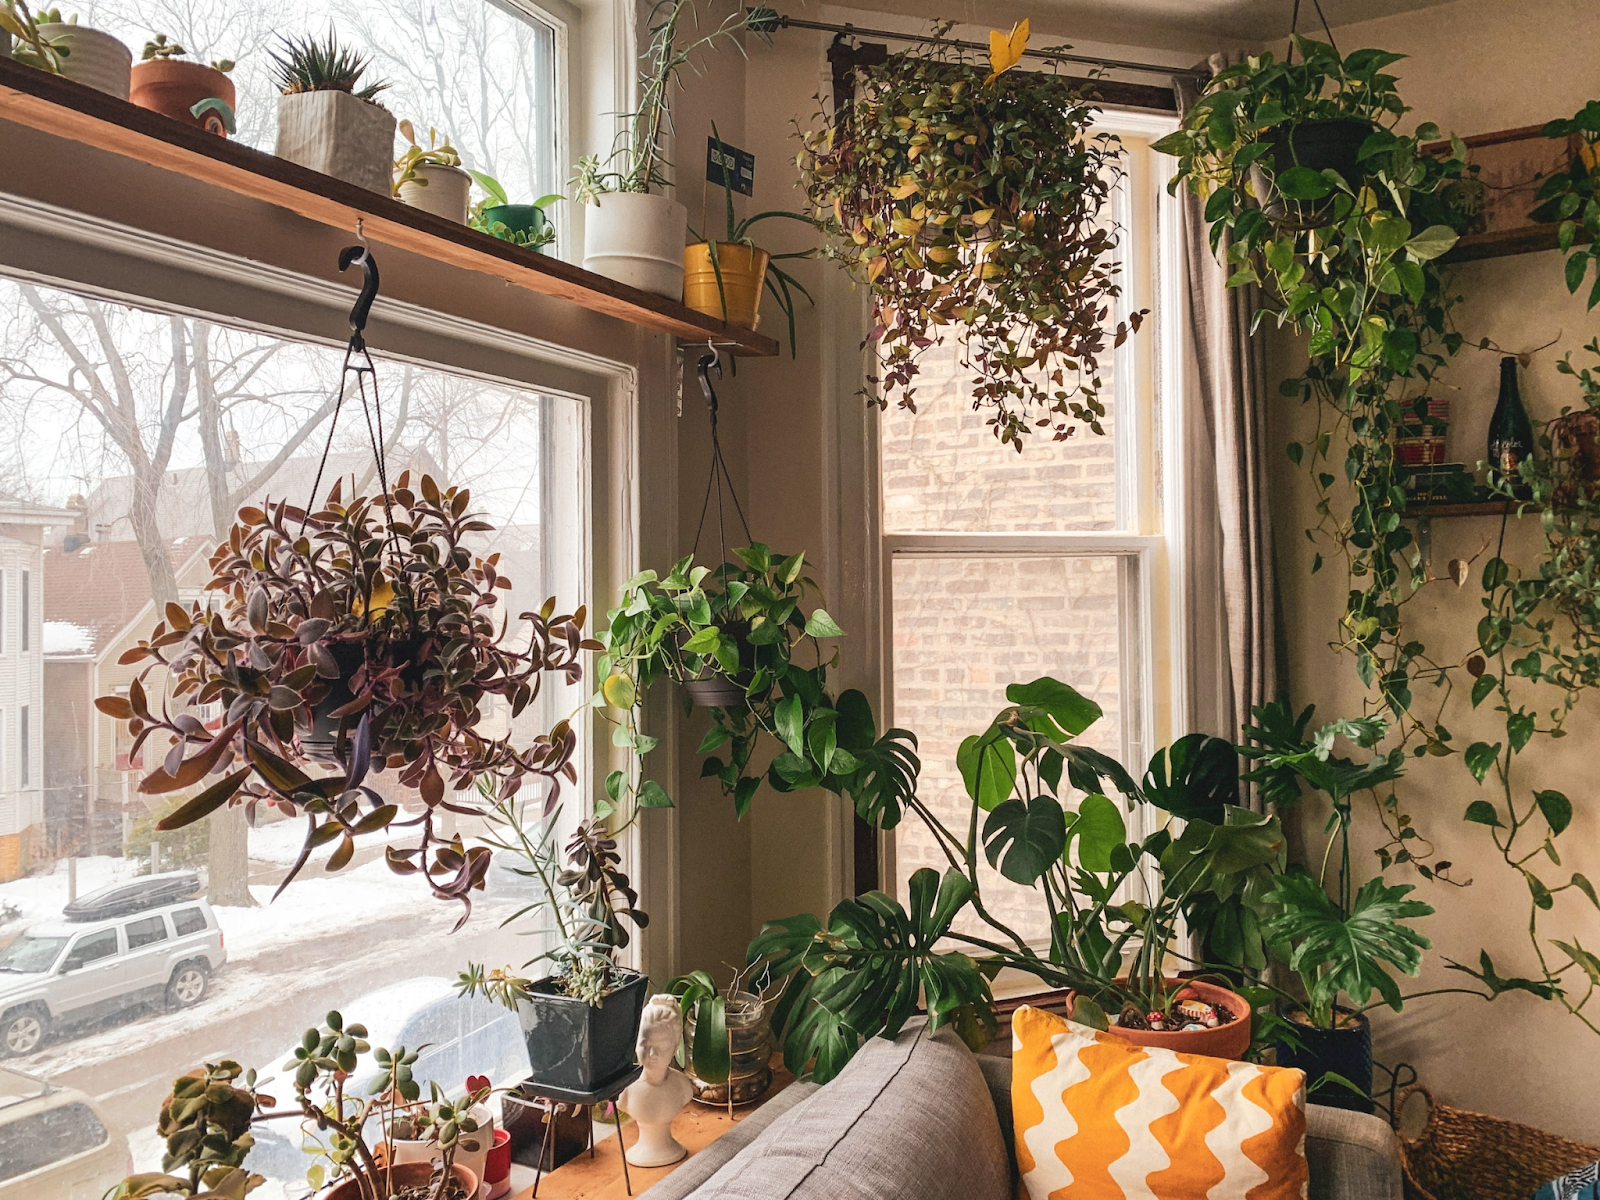 Decorating indoor plants next to window